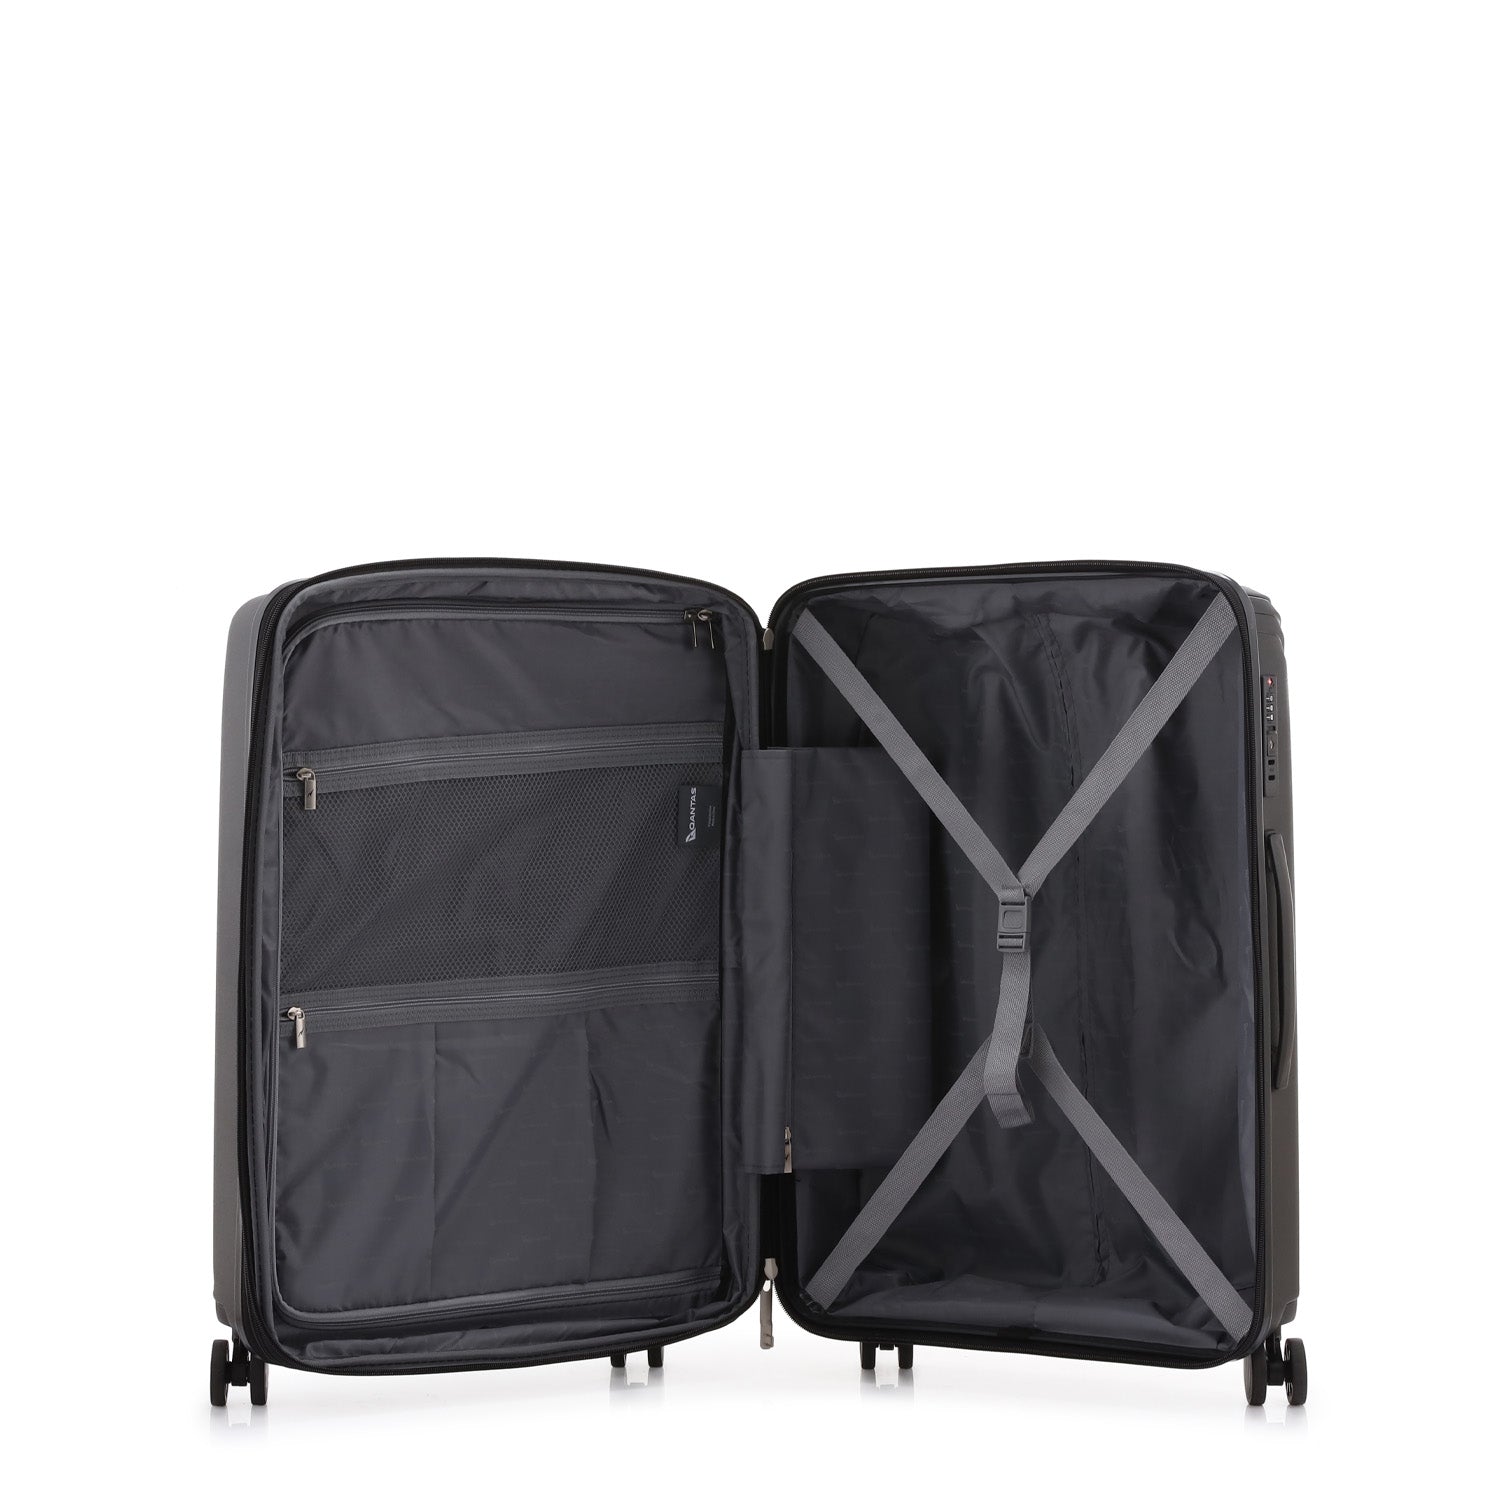 Qantas - QF270 New York Medium 66.5cm Spinner suitcase - Black-6